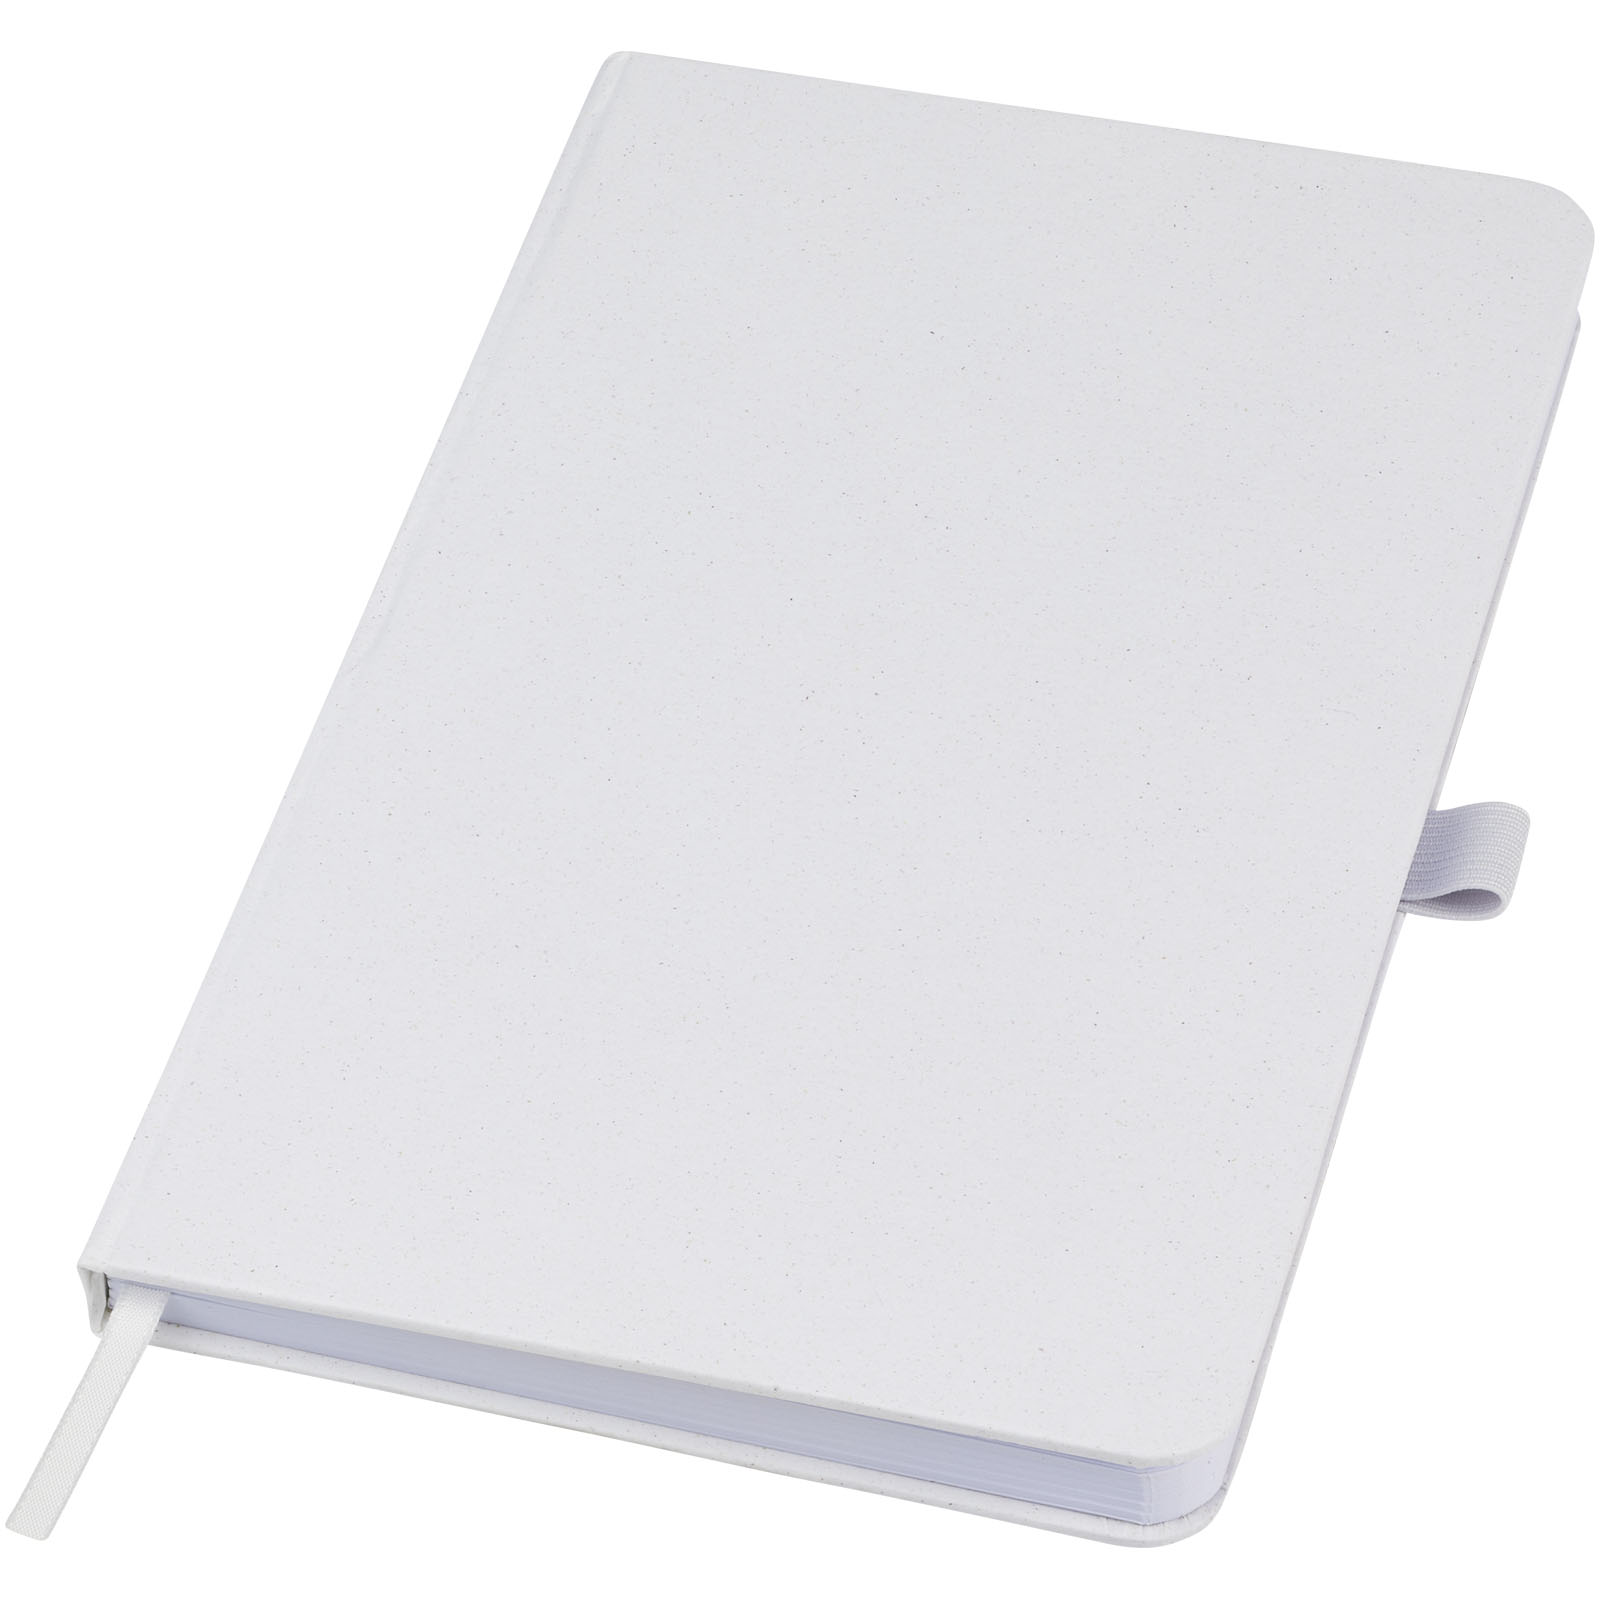 Notebooks & Desk Essentials - Fabianna crush paper hard cover notebook